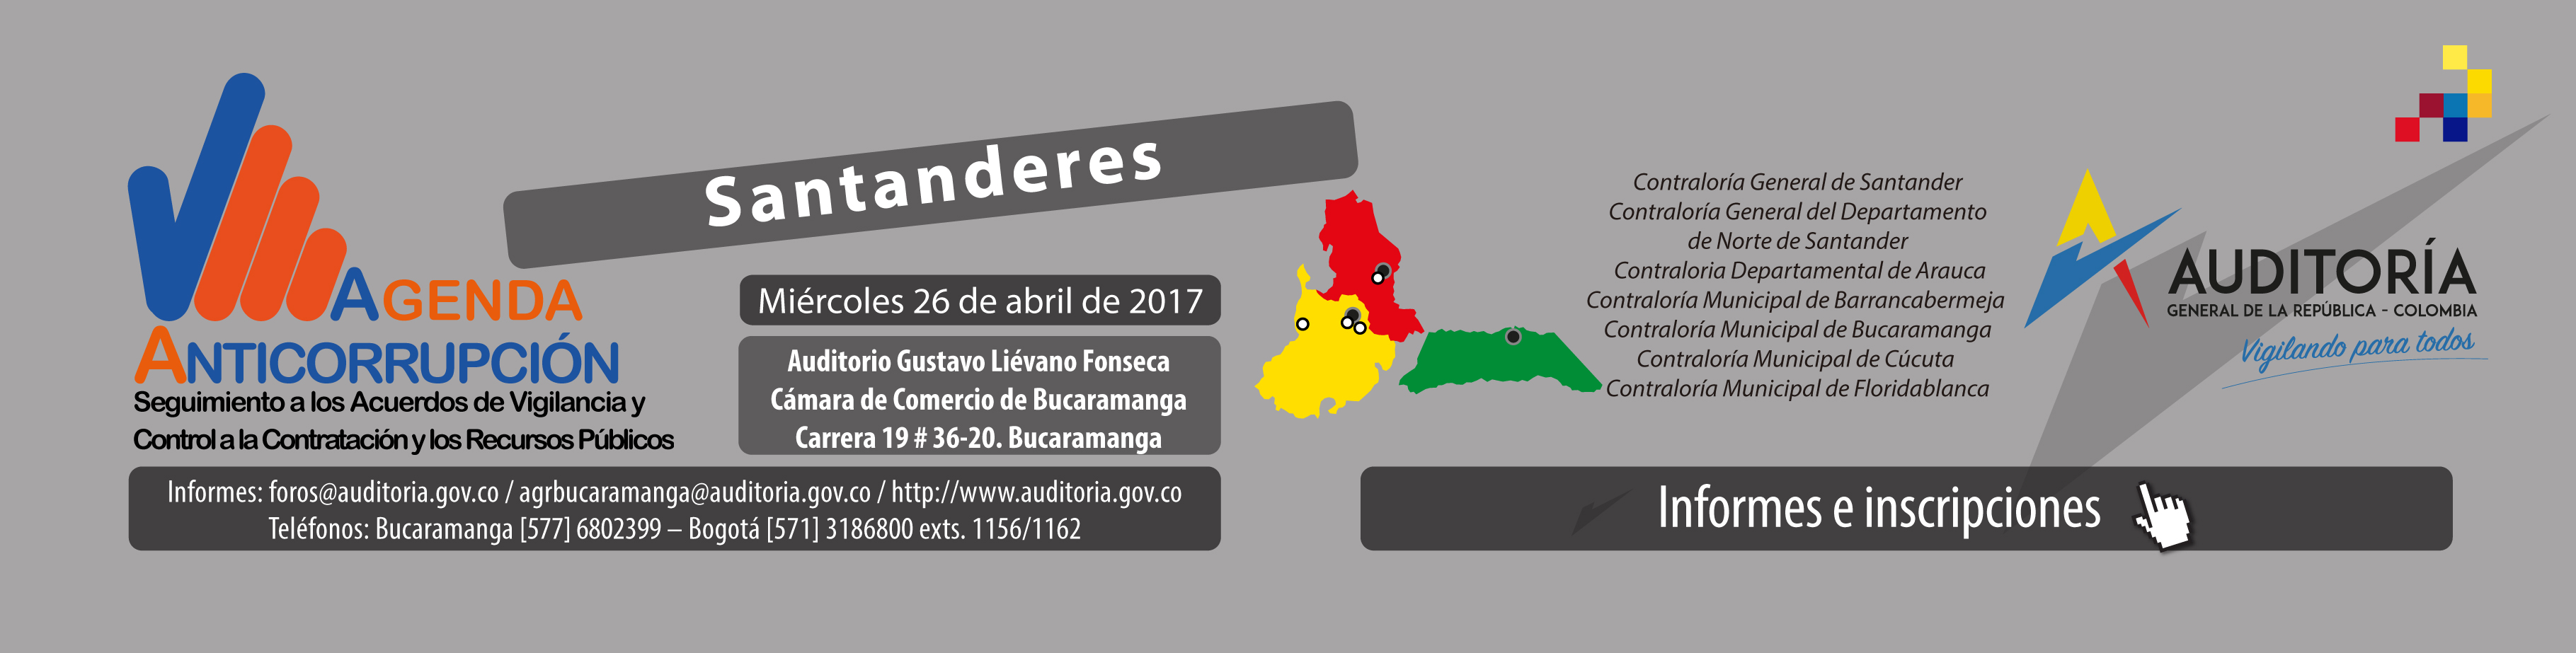 Agenda Anticorrupción - Santanderes